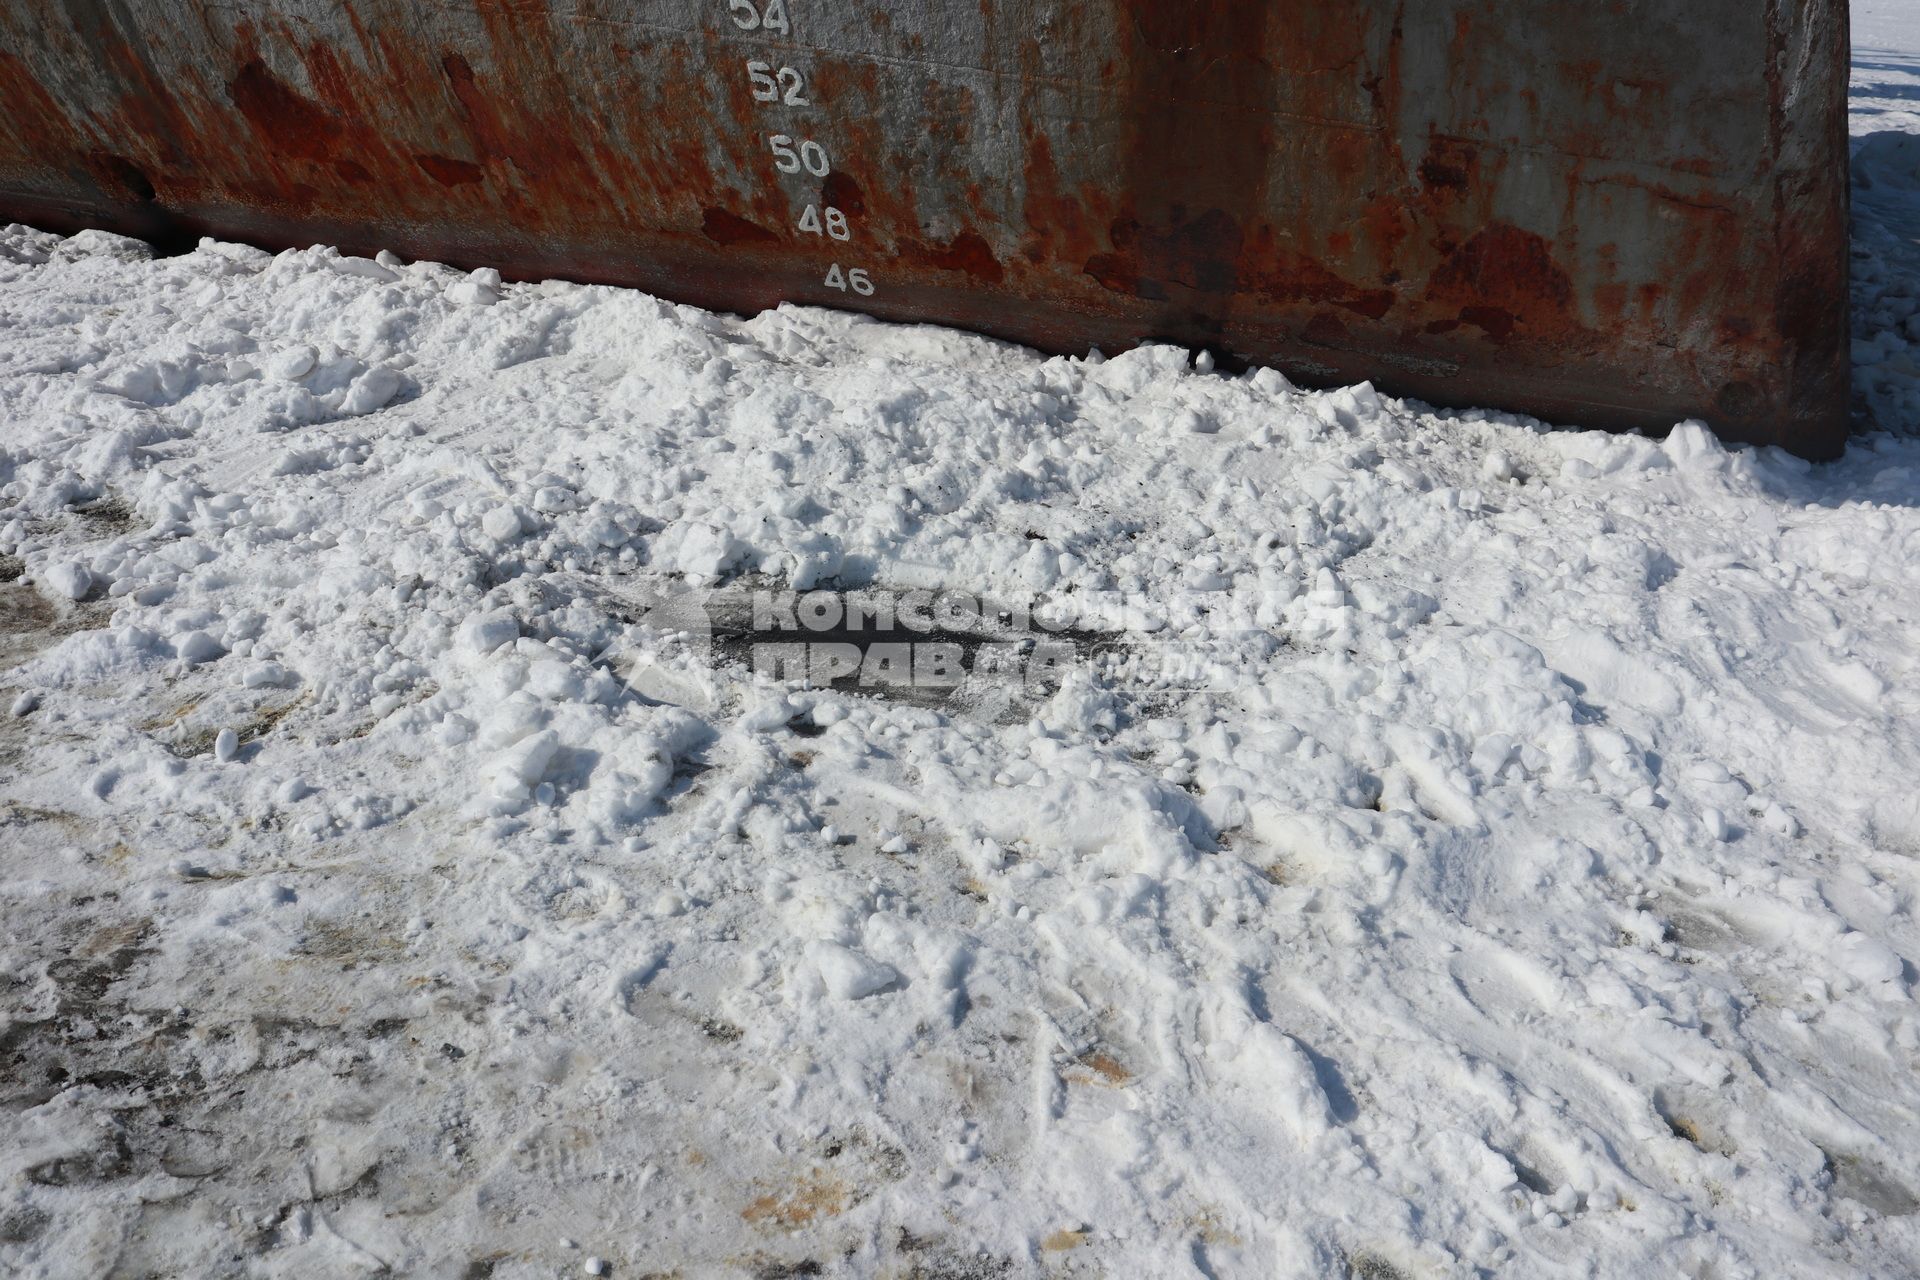 Владивосток. На острове Русский неизвестные засыпали снегом нефтяные пятна рядом с рыболовецкими траулерами `Ленск` и `Билене`.